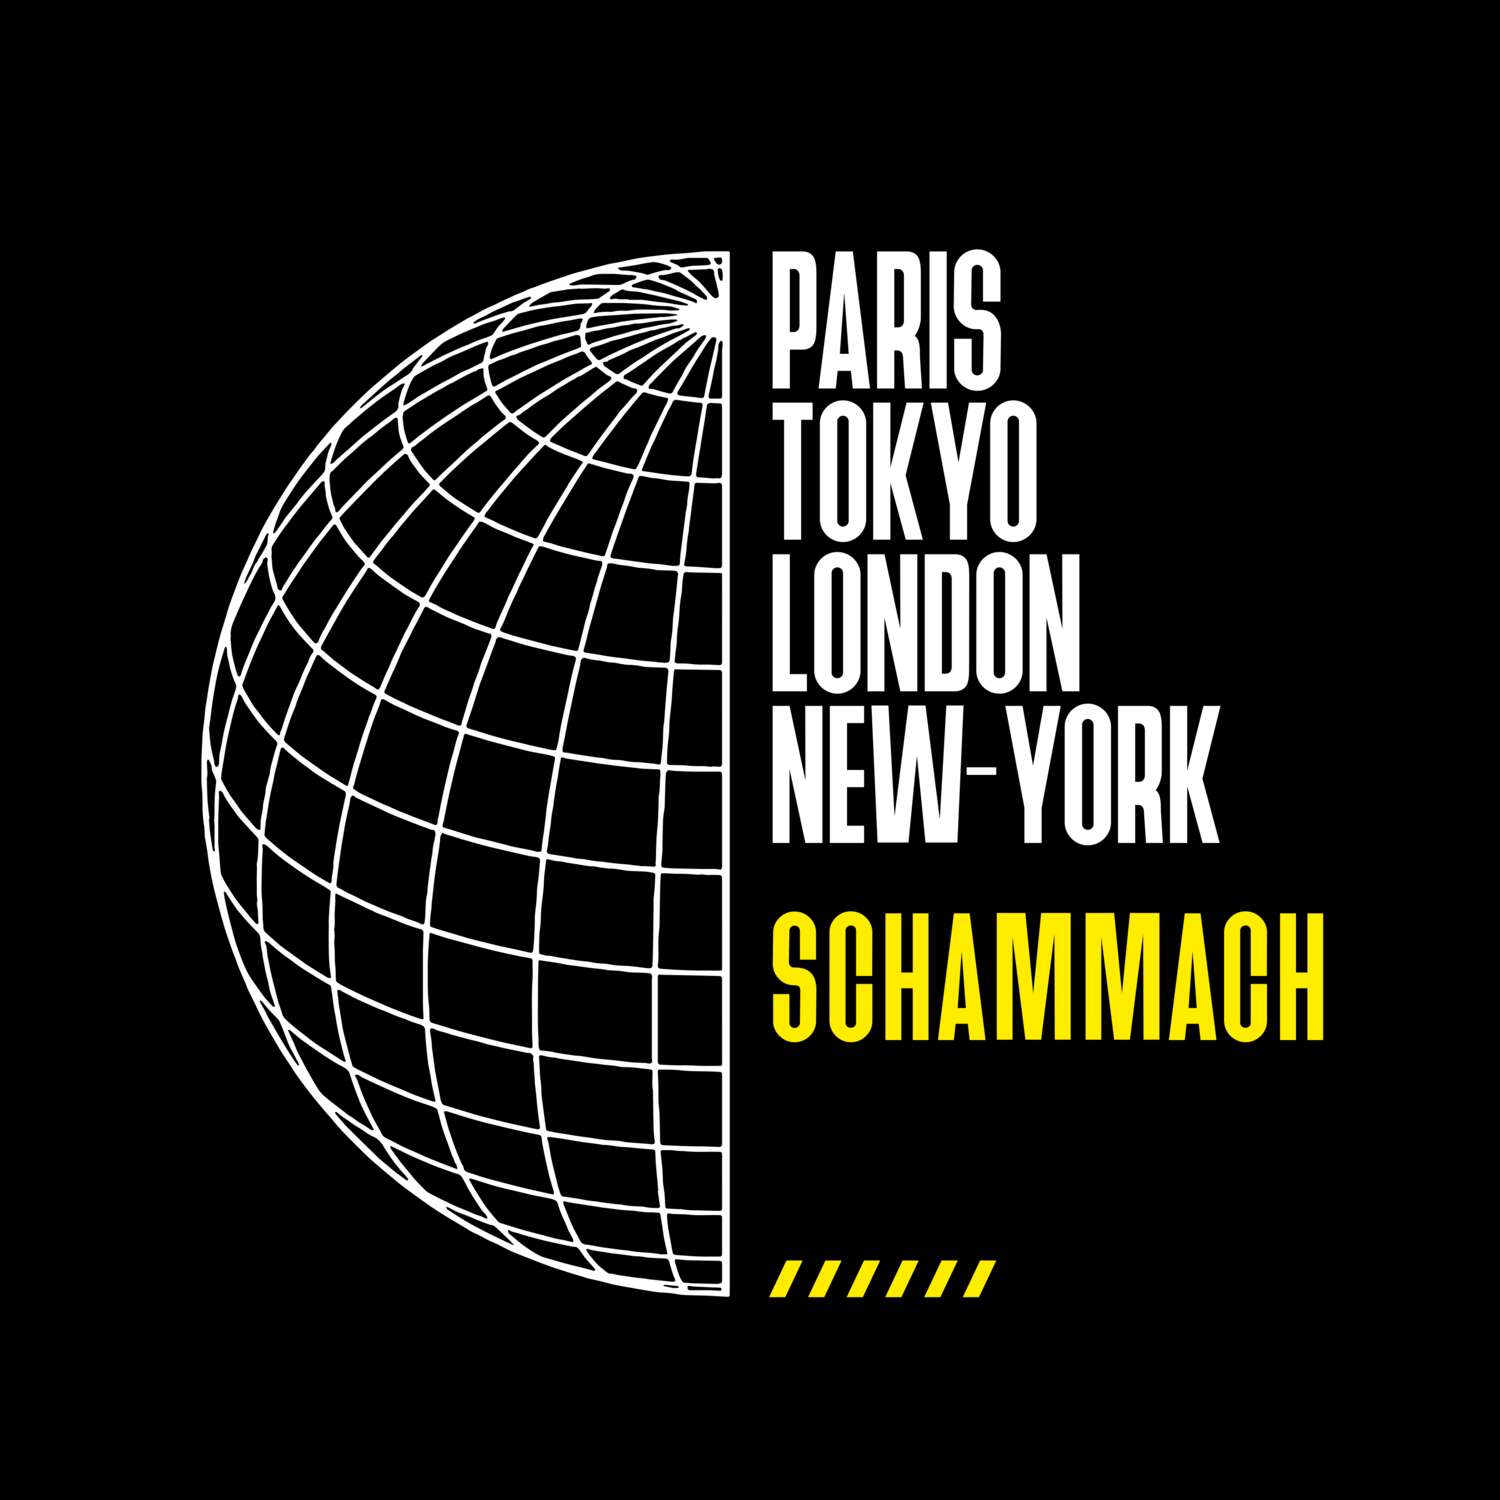 Schammach T-Shirt »Paris Tokyo London«